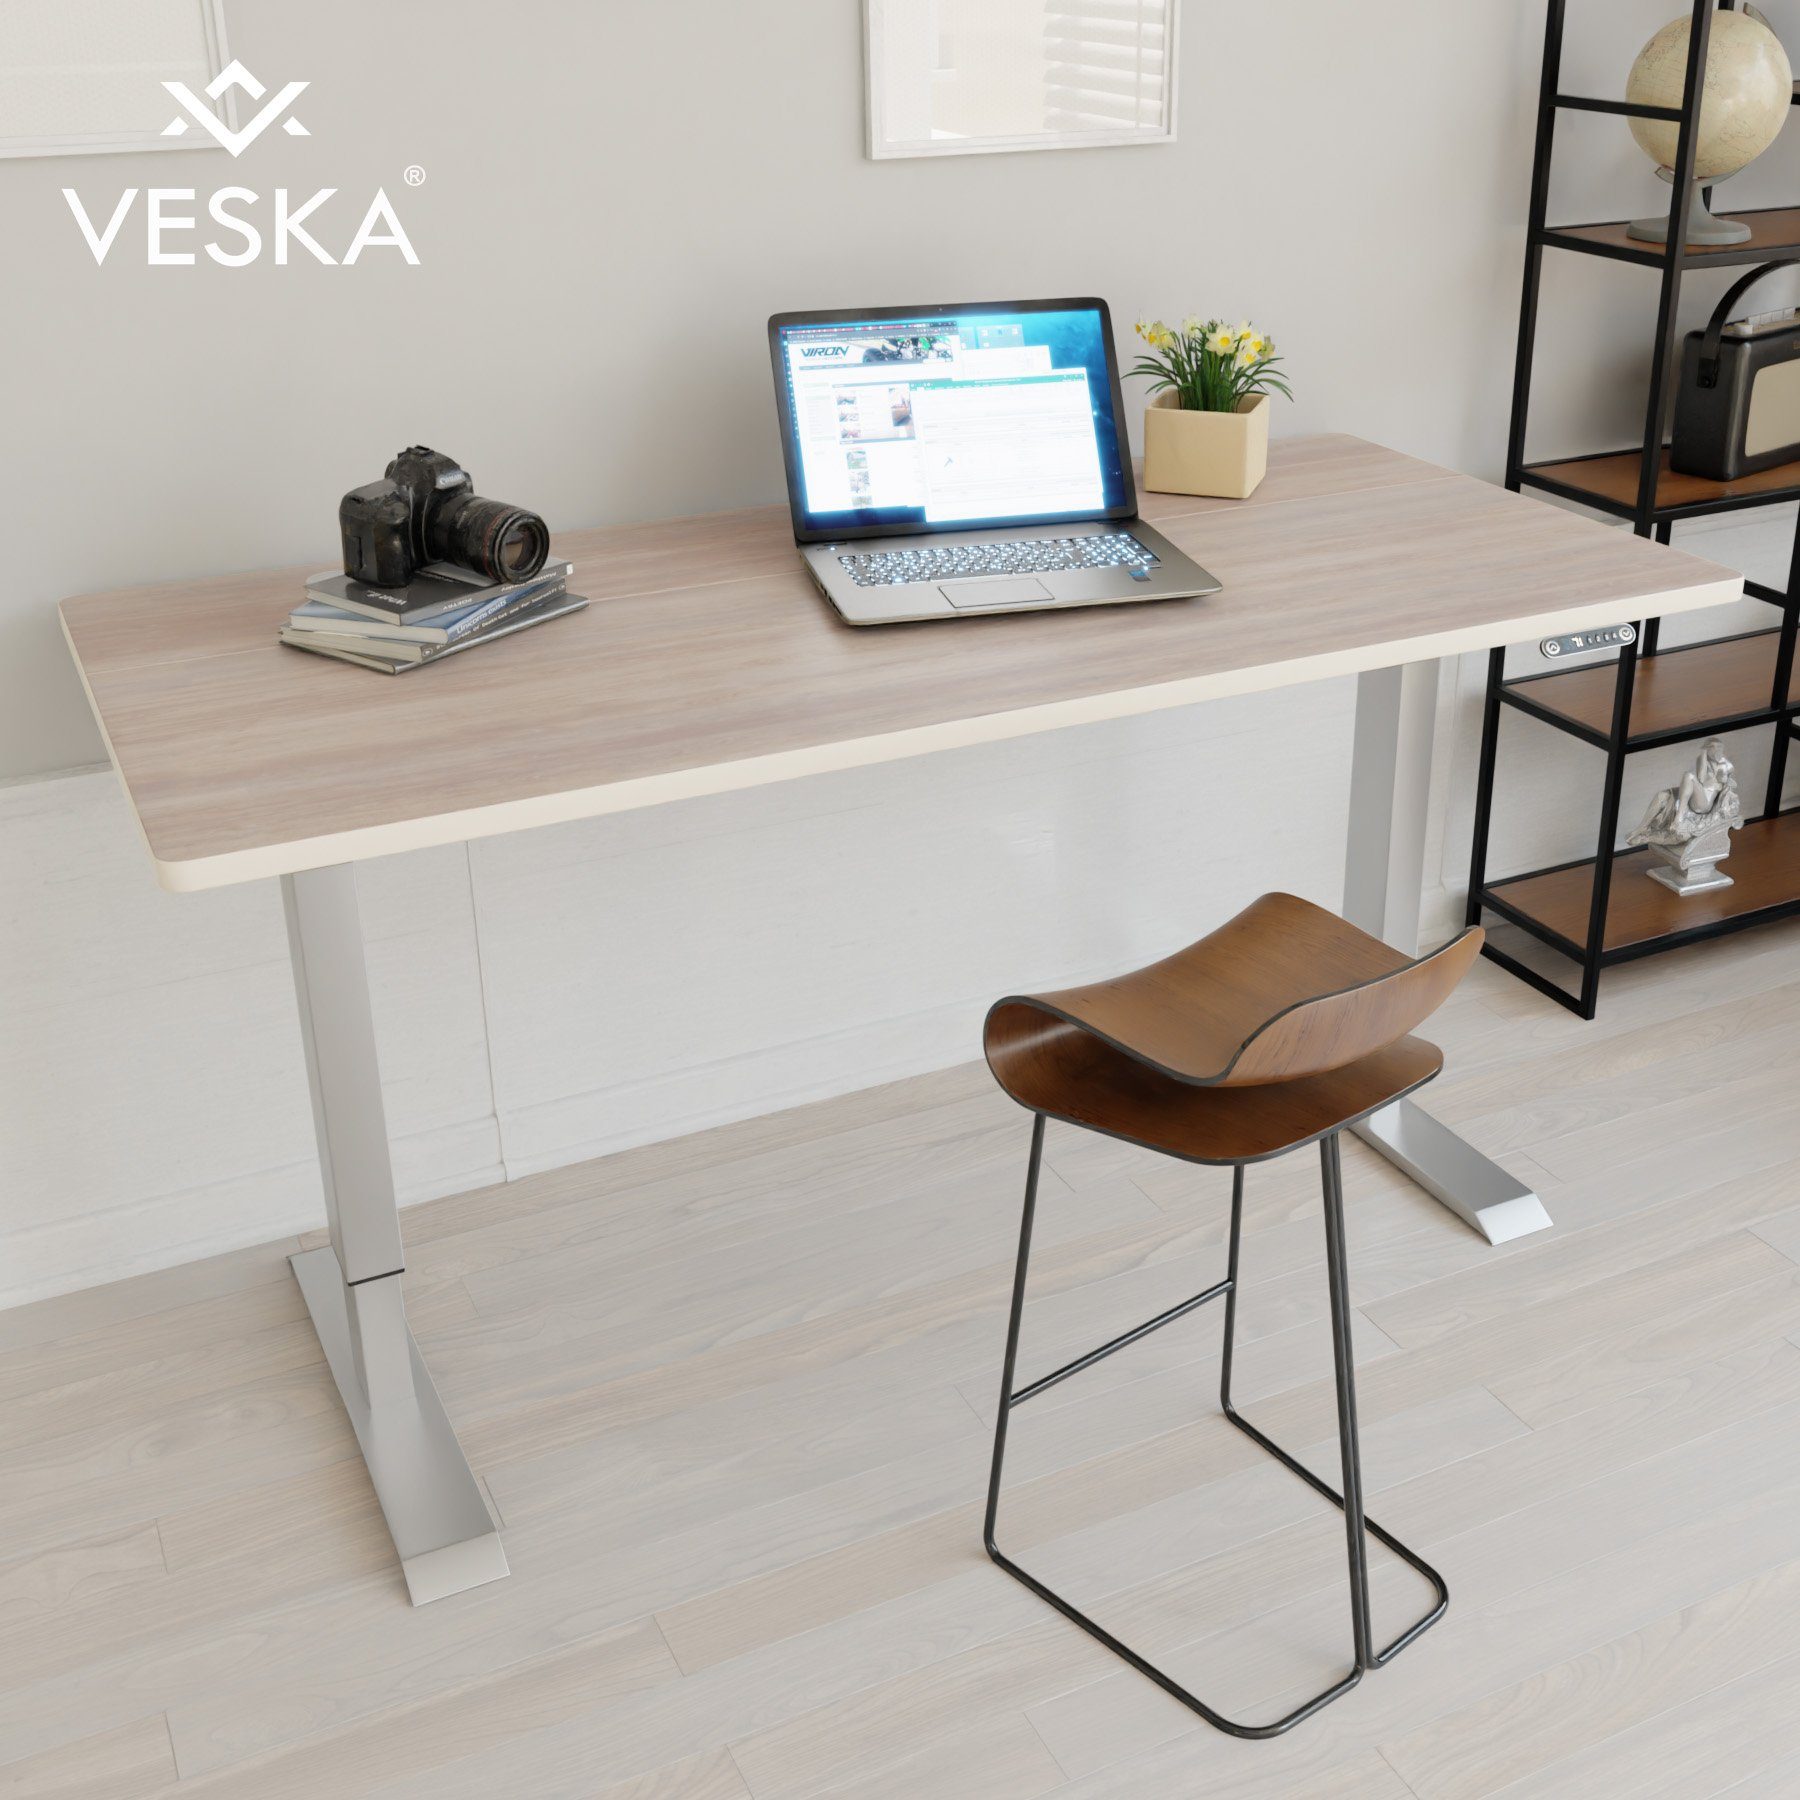 VESKA Schreibtisch Höhenverstellbar 140 x 70 cm - Bürotisch Elektrisch mit Touchscreen - Sitz- & Stehpult Home Office Silber | Eiche